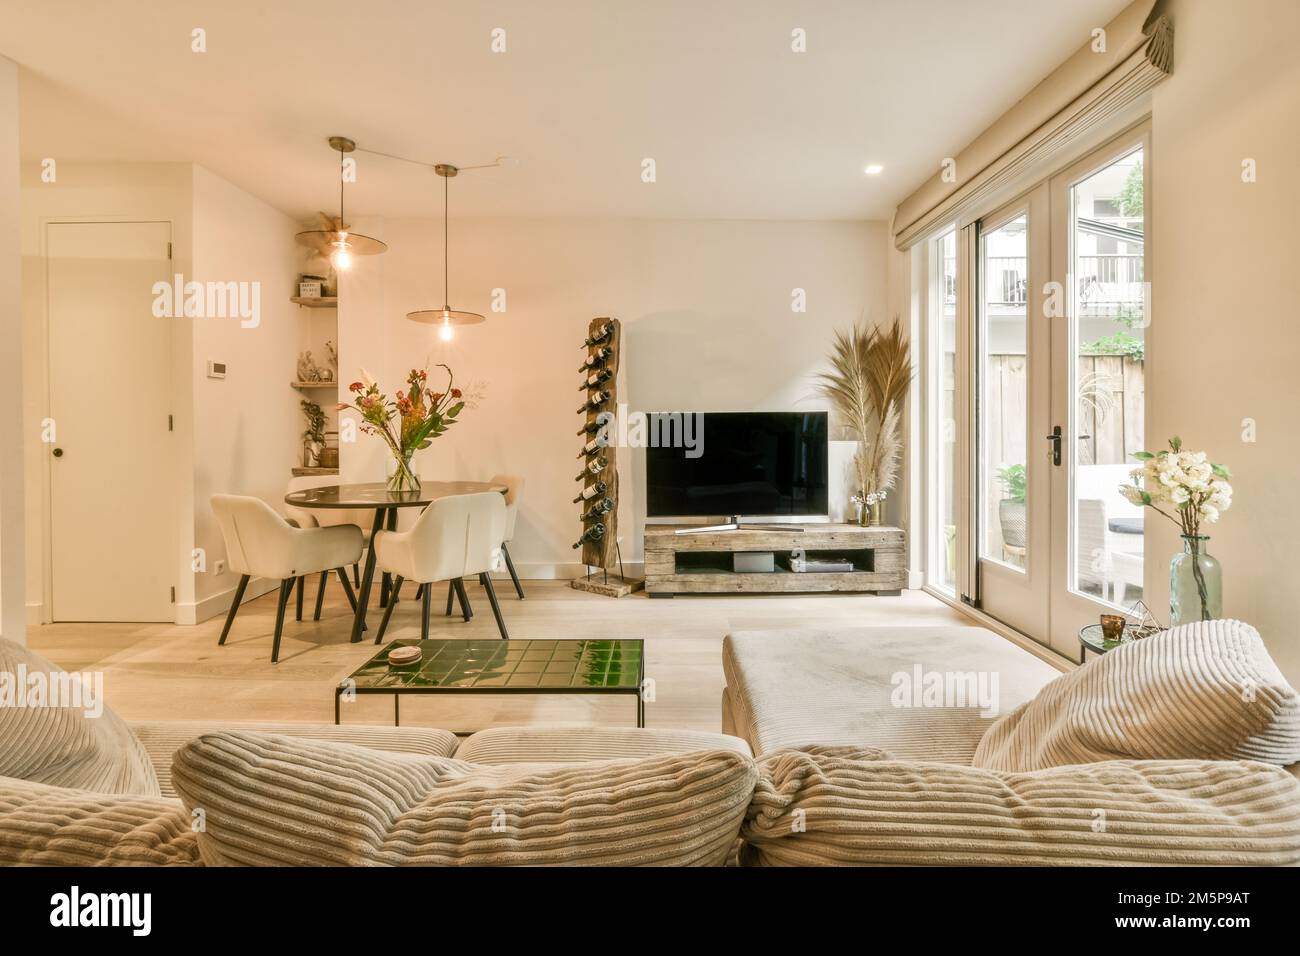 Ein Wohnzimmer mit zwei Sofas und einem Fernseher in der Mitte des Zimmers  ist eine offene Terrasse Stockfotografie - Alamy